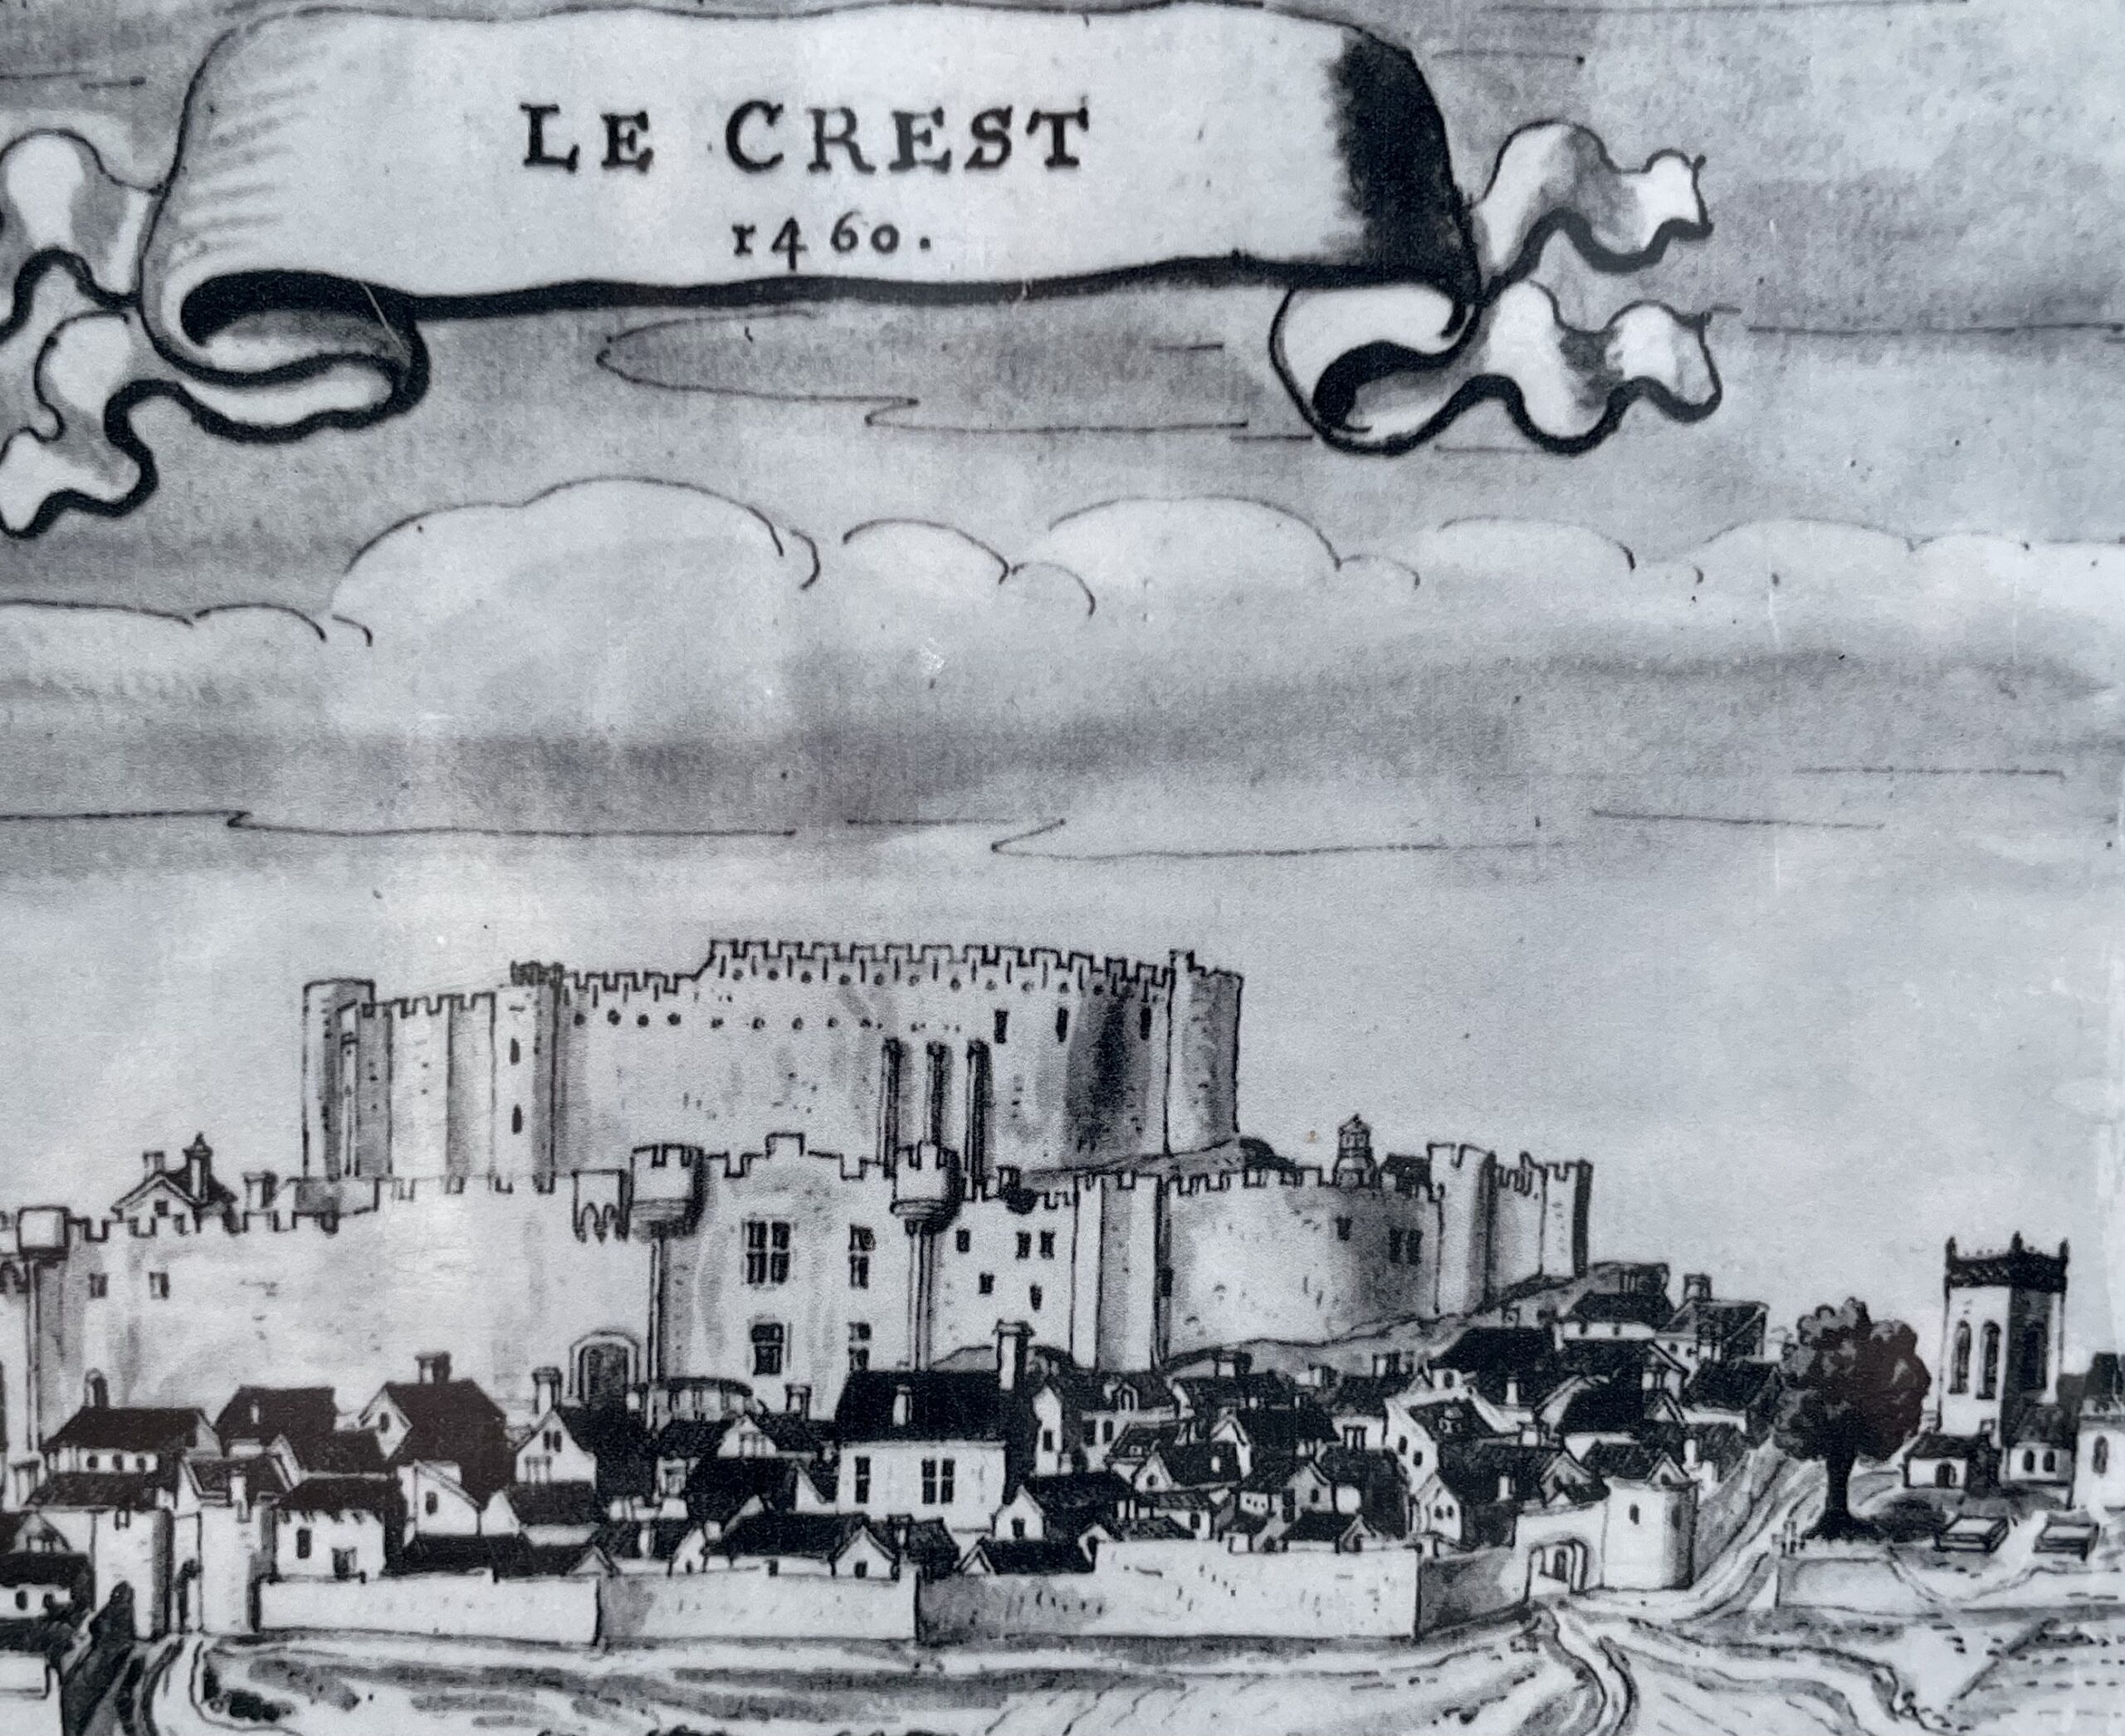 À la découverte du territoire de Mond’Arverne/aufildeslieux.fr/Château et village du Crest en 1460 © photo K.HIBBS